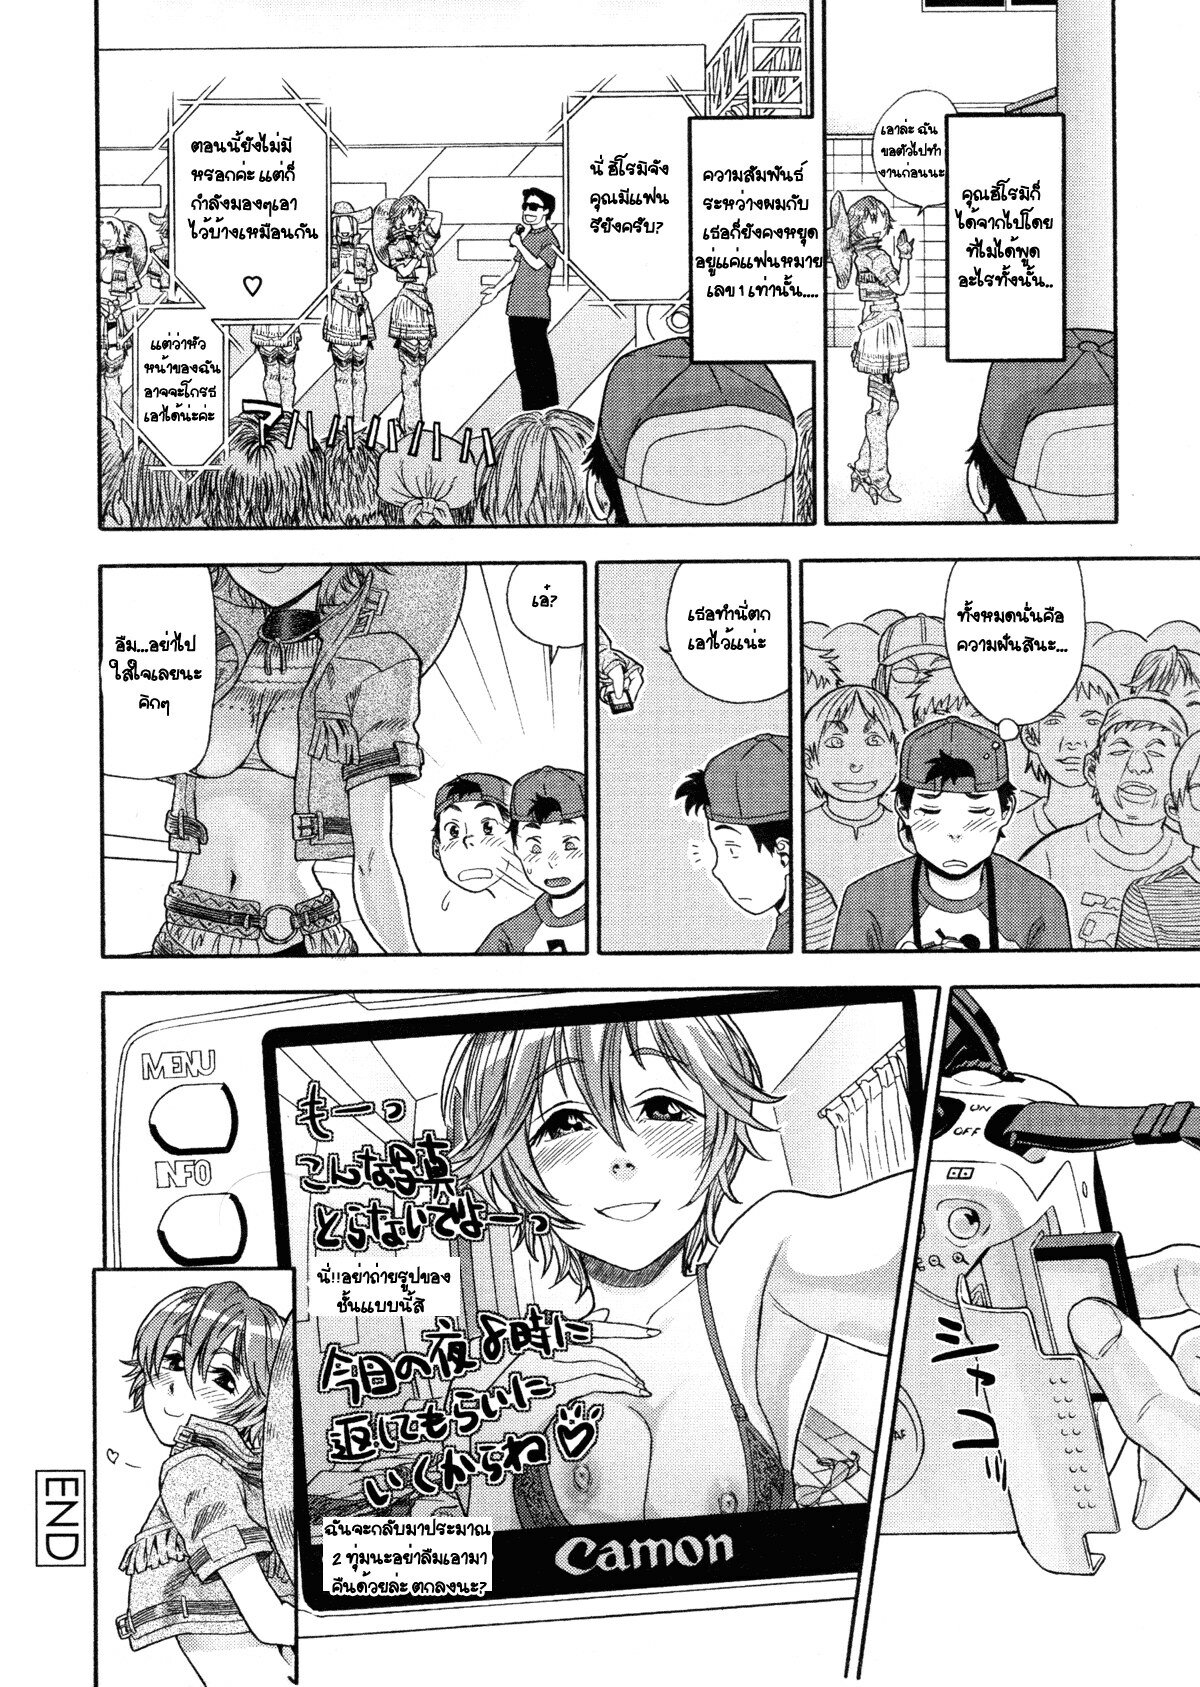 [Yamatogawa] COW GIRL =Aqua Bless chapter3= [Thai] page 22 full